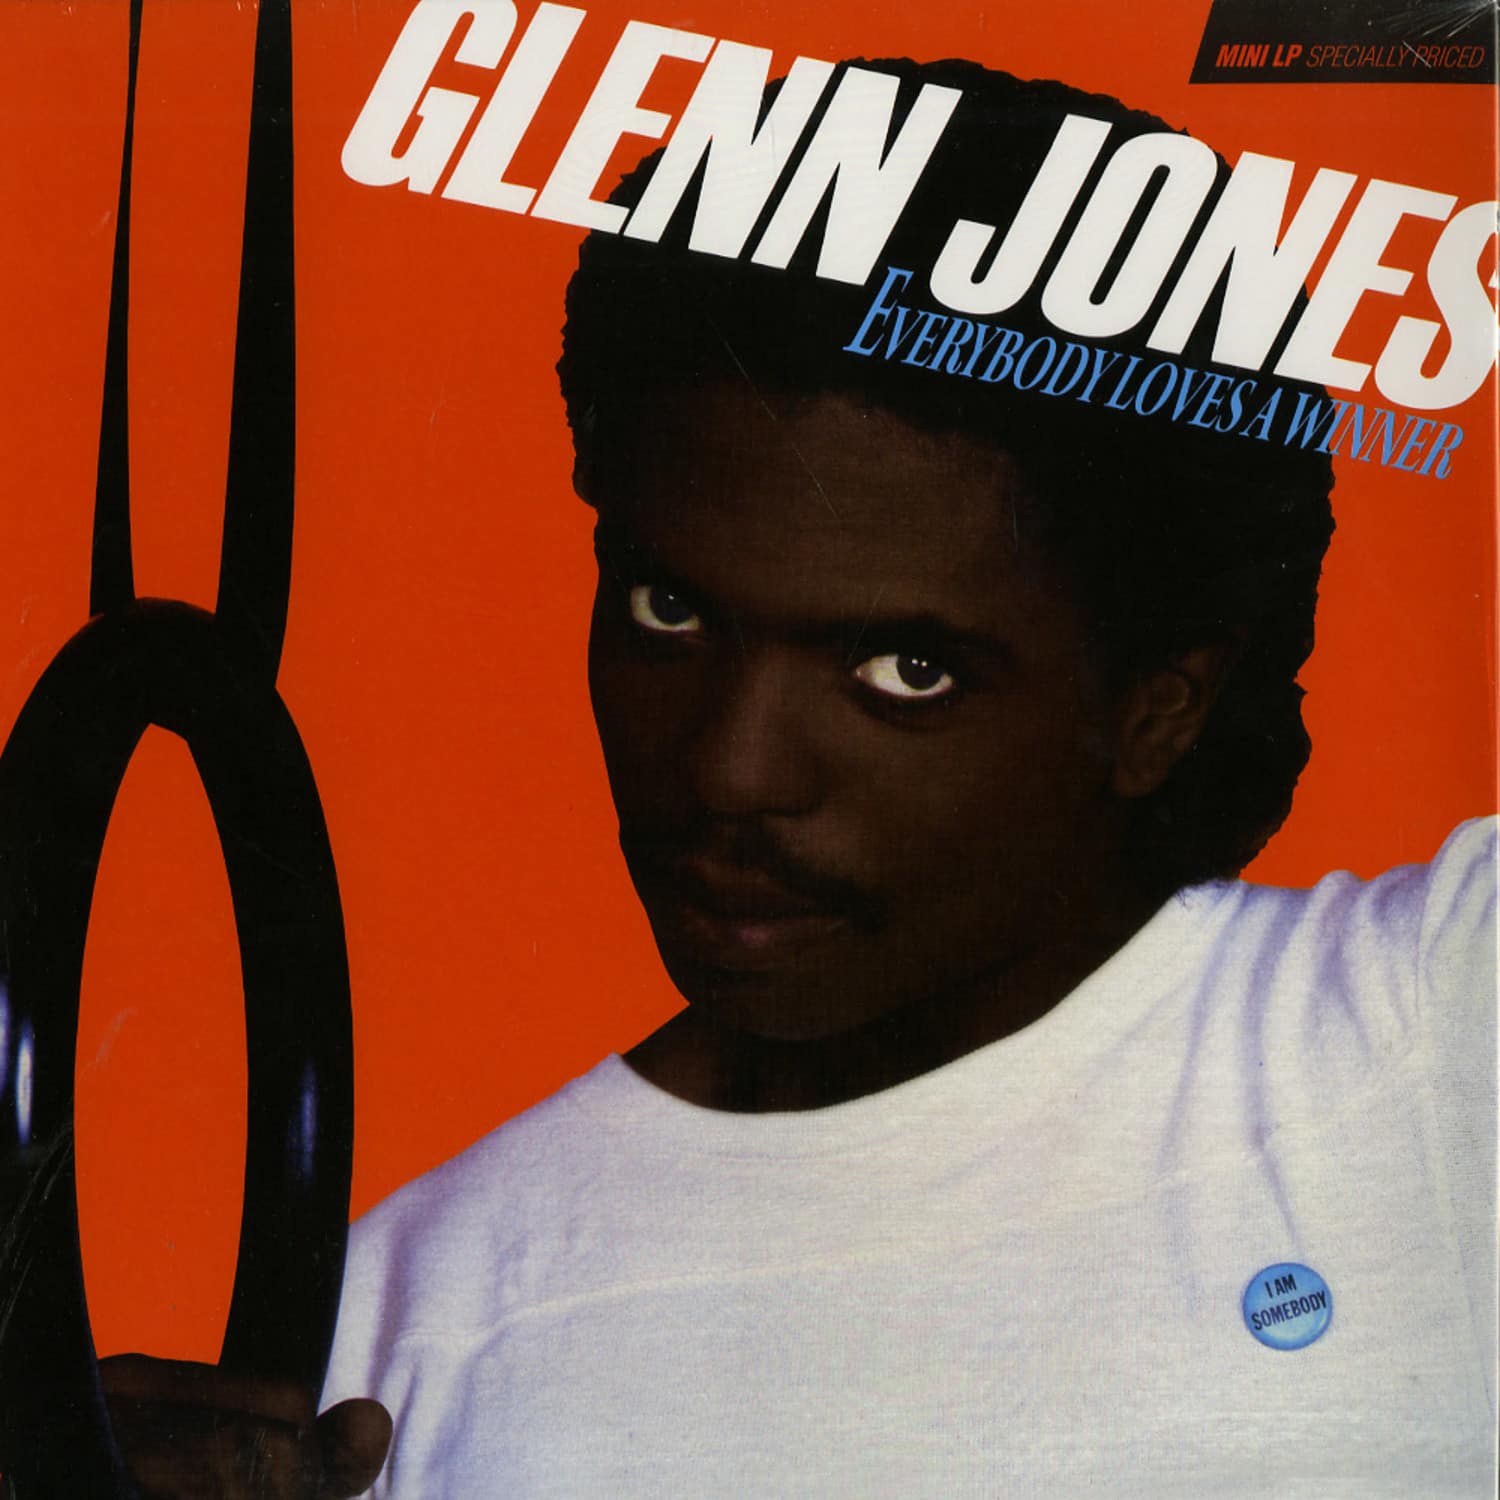 Glenn Jones - EVERYBODY LOVES A WINNER